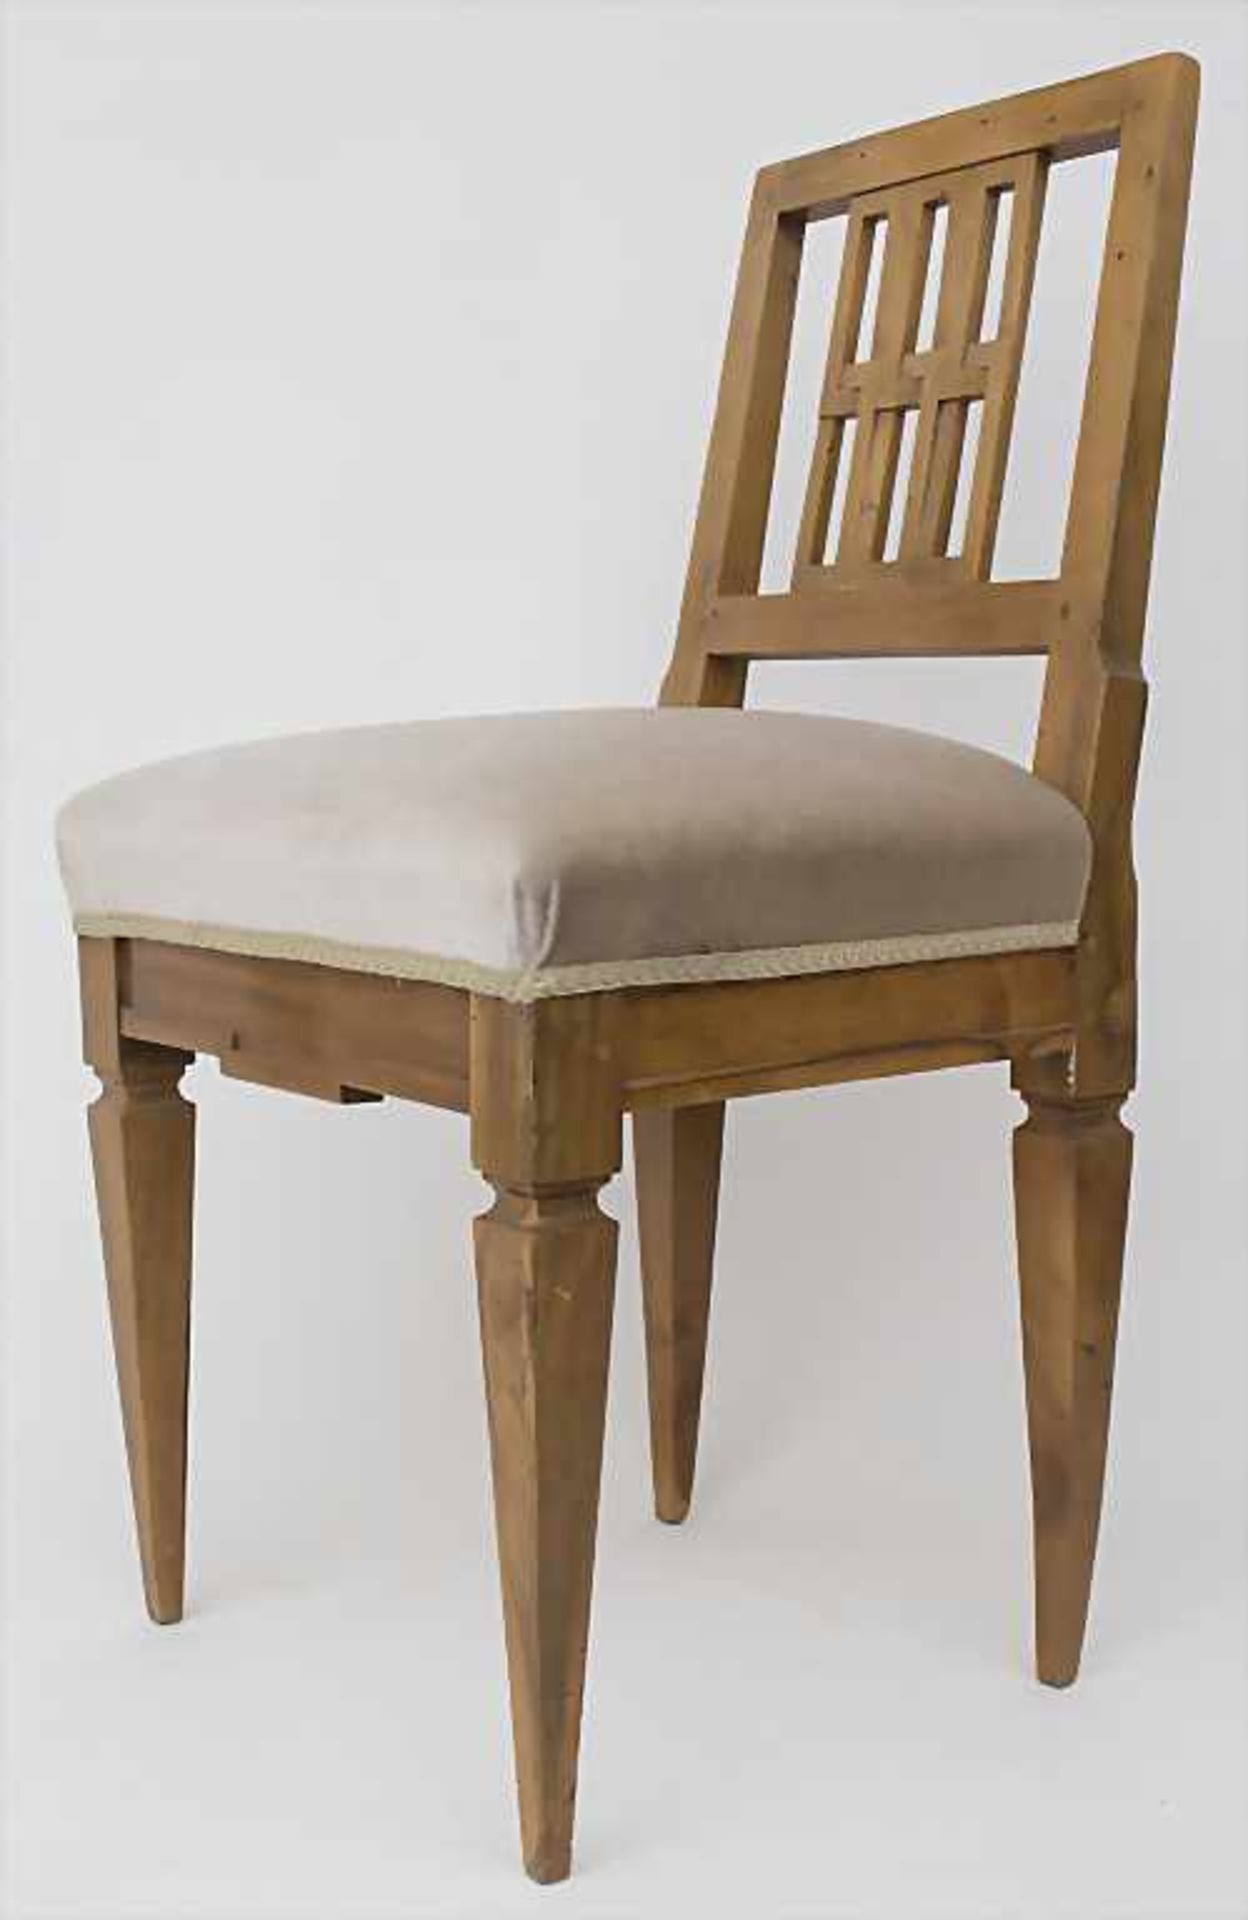 Klassizismus Stuhl / A classicism chair, um 1800 - Image 2 of 5